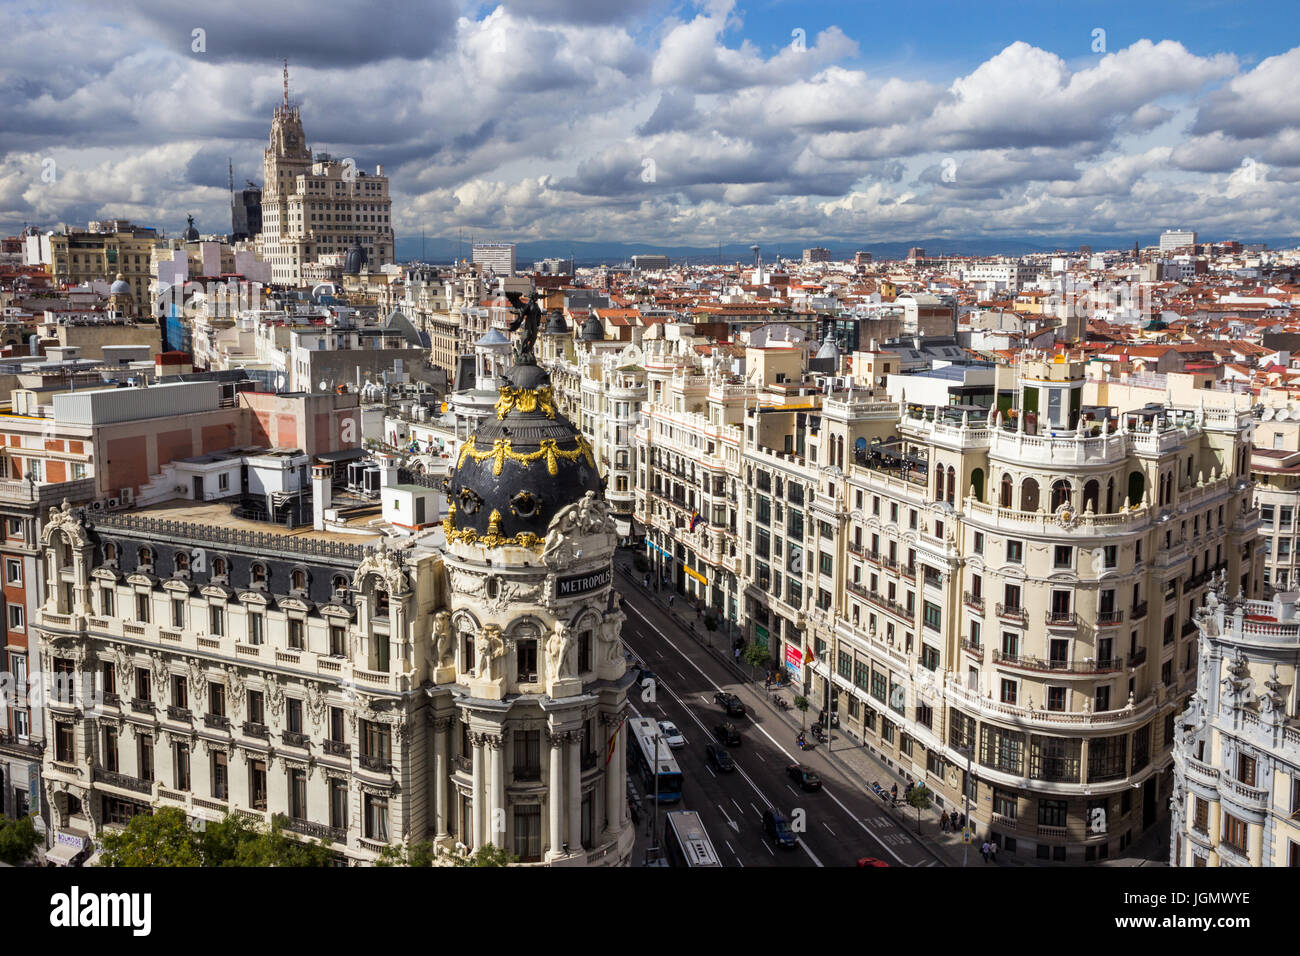 MADRID, Spanien - 10. Oktober 2014: Panoramablick an der Gran Via, der wichtigsten Einkaufsstraße in Madrid, Spanien. Stockfoto